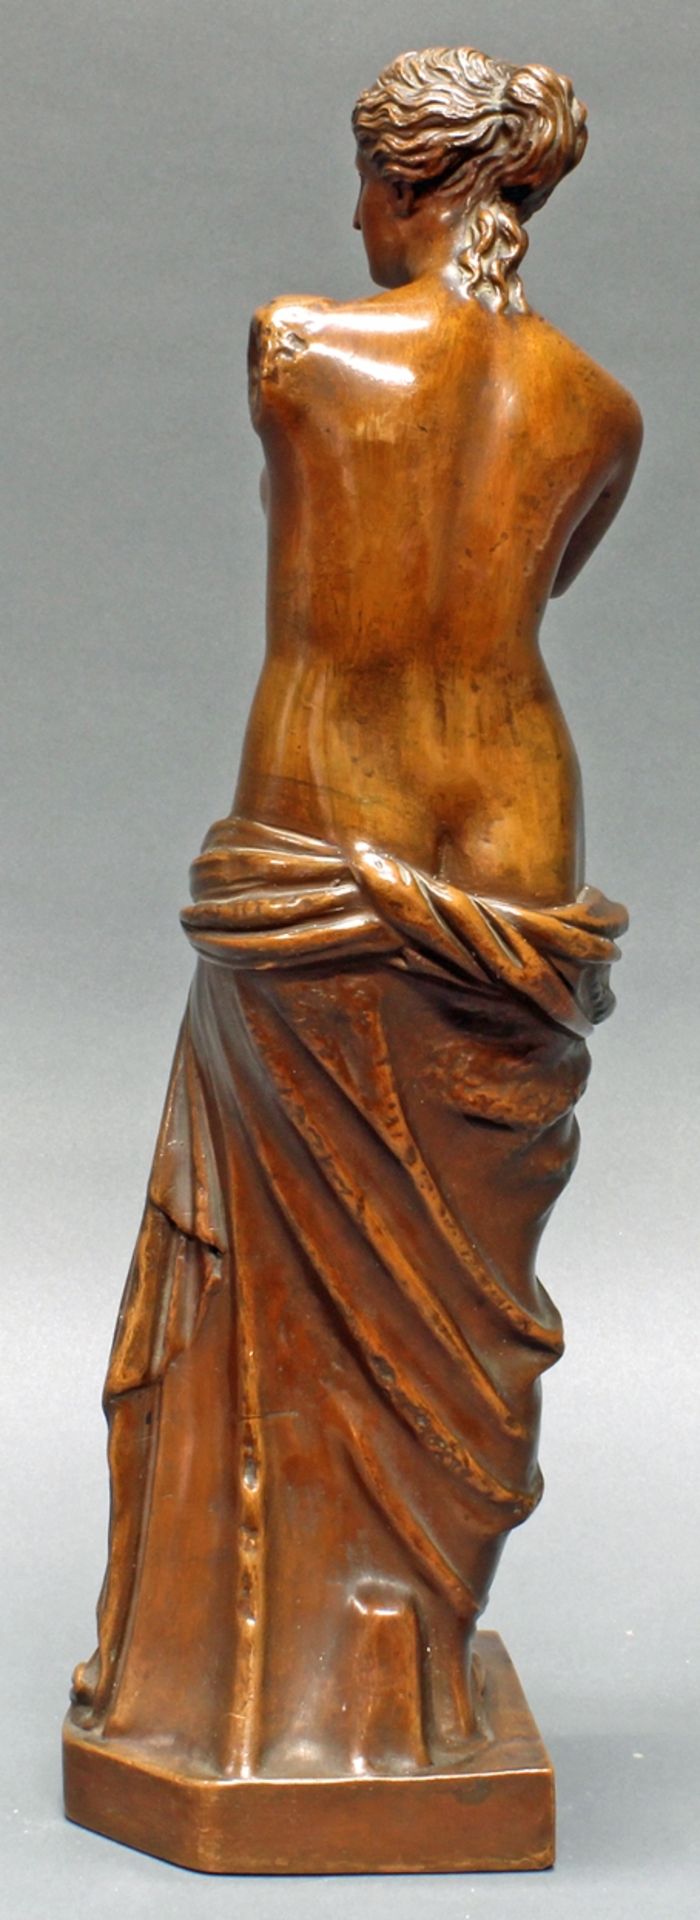 Skulptur, "Venus von Milo", Ton mit Kupfer überzogen (?), wohl Oberfläche behandelt, nummeriert unt - Image 2 of 3